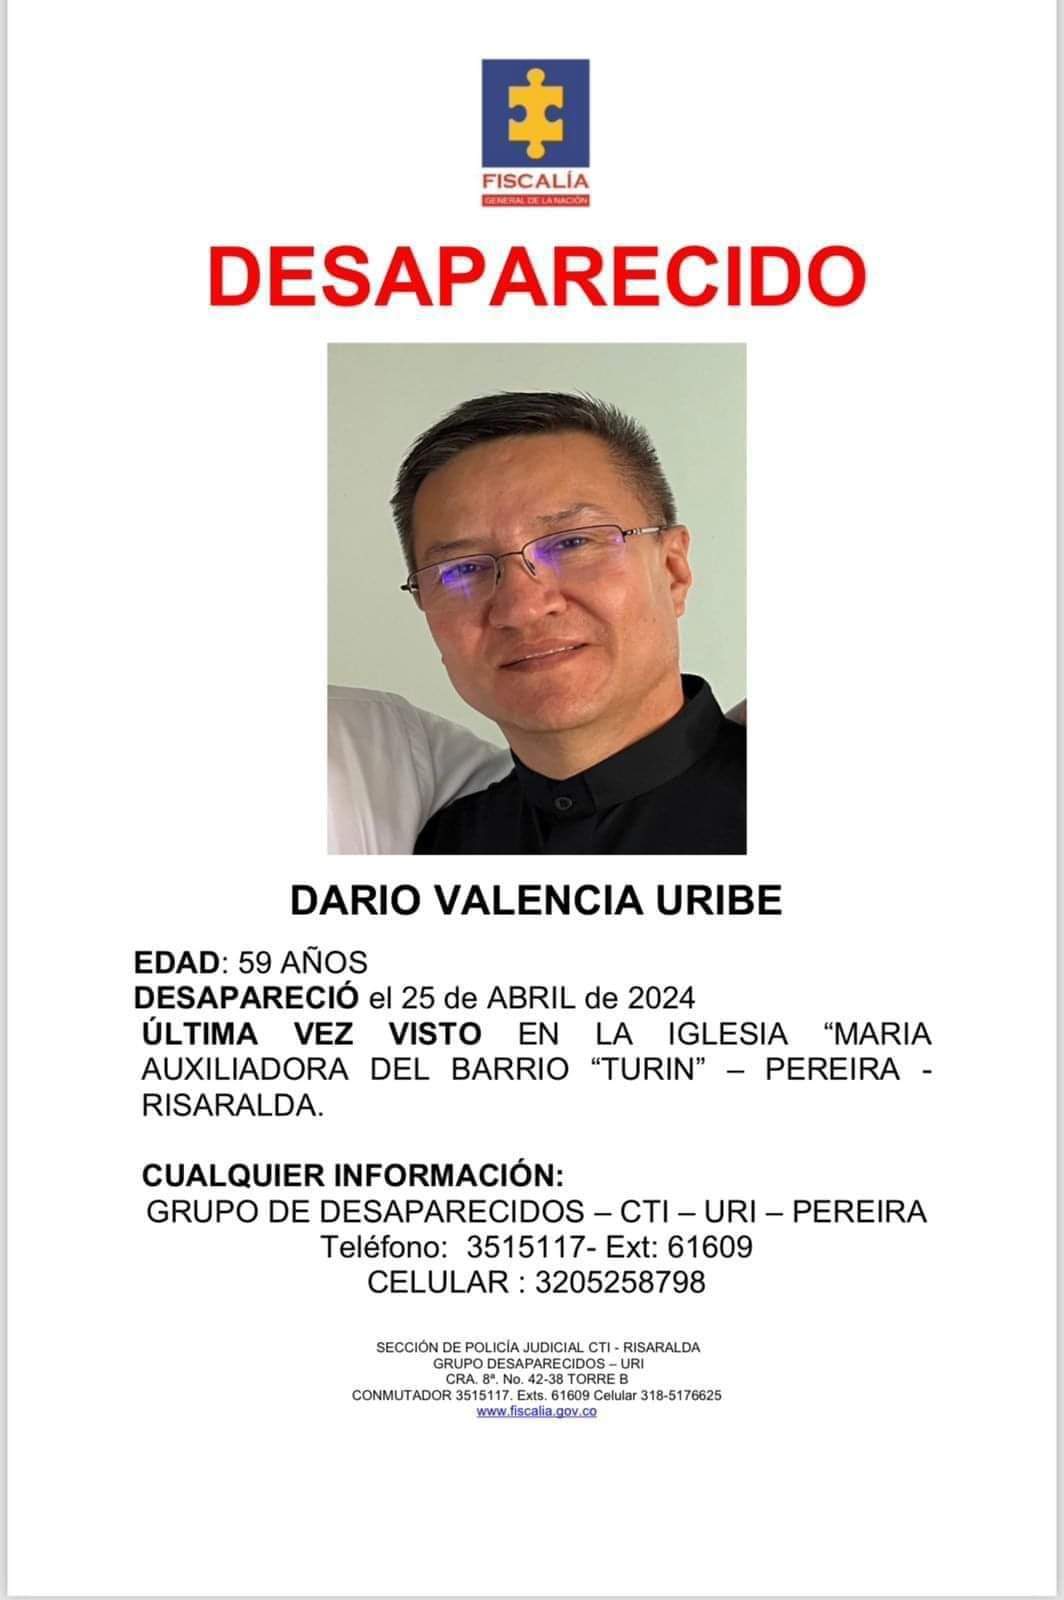 Cartel con el que buscan al sacerdote Darío Valencia